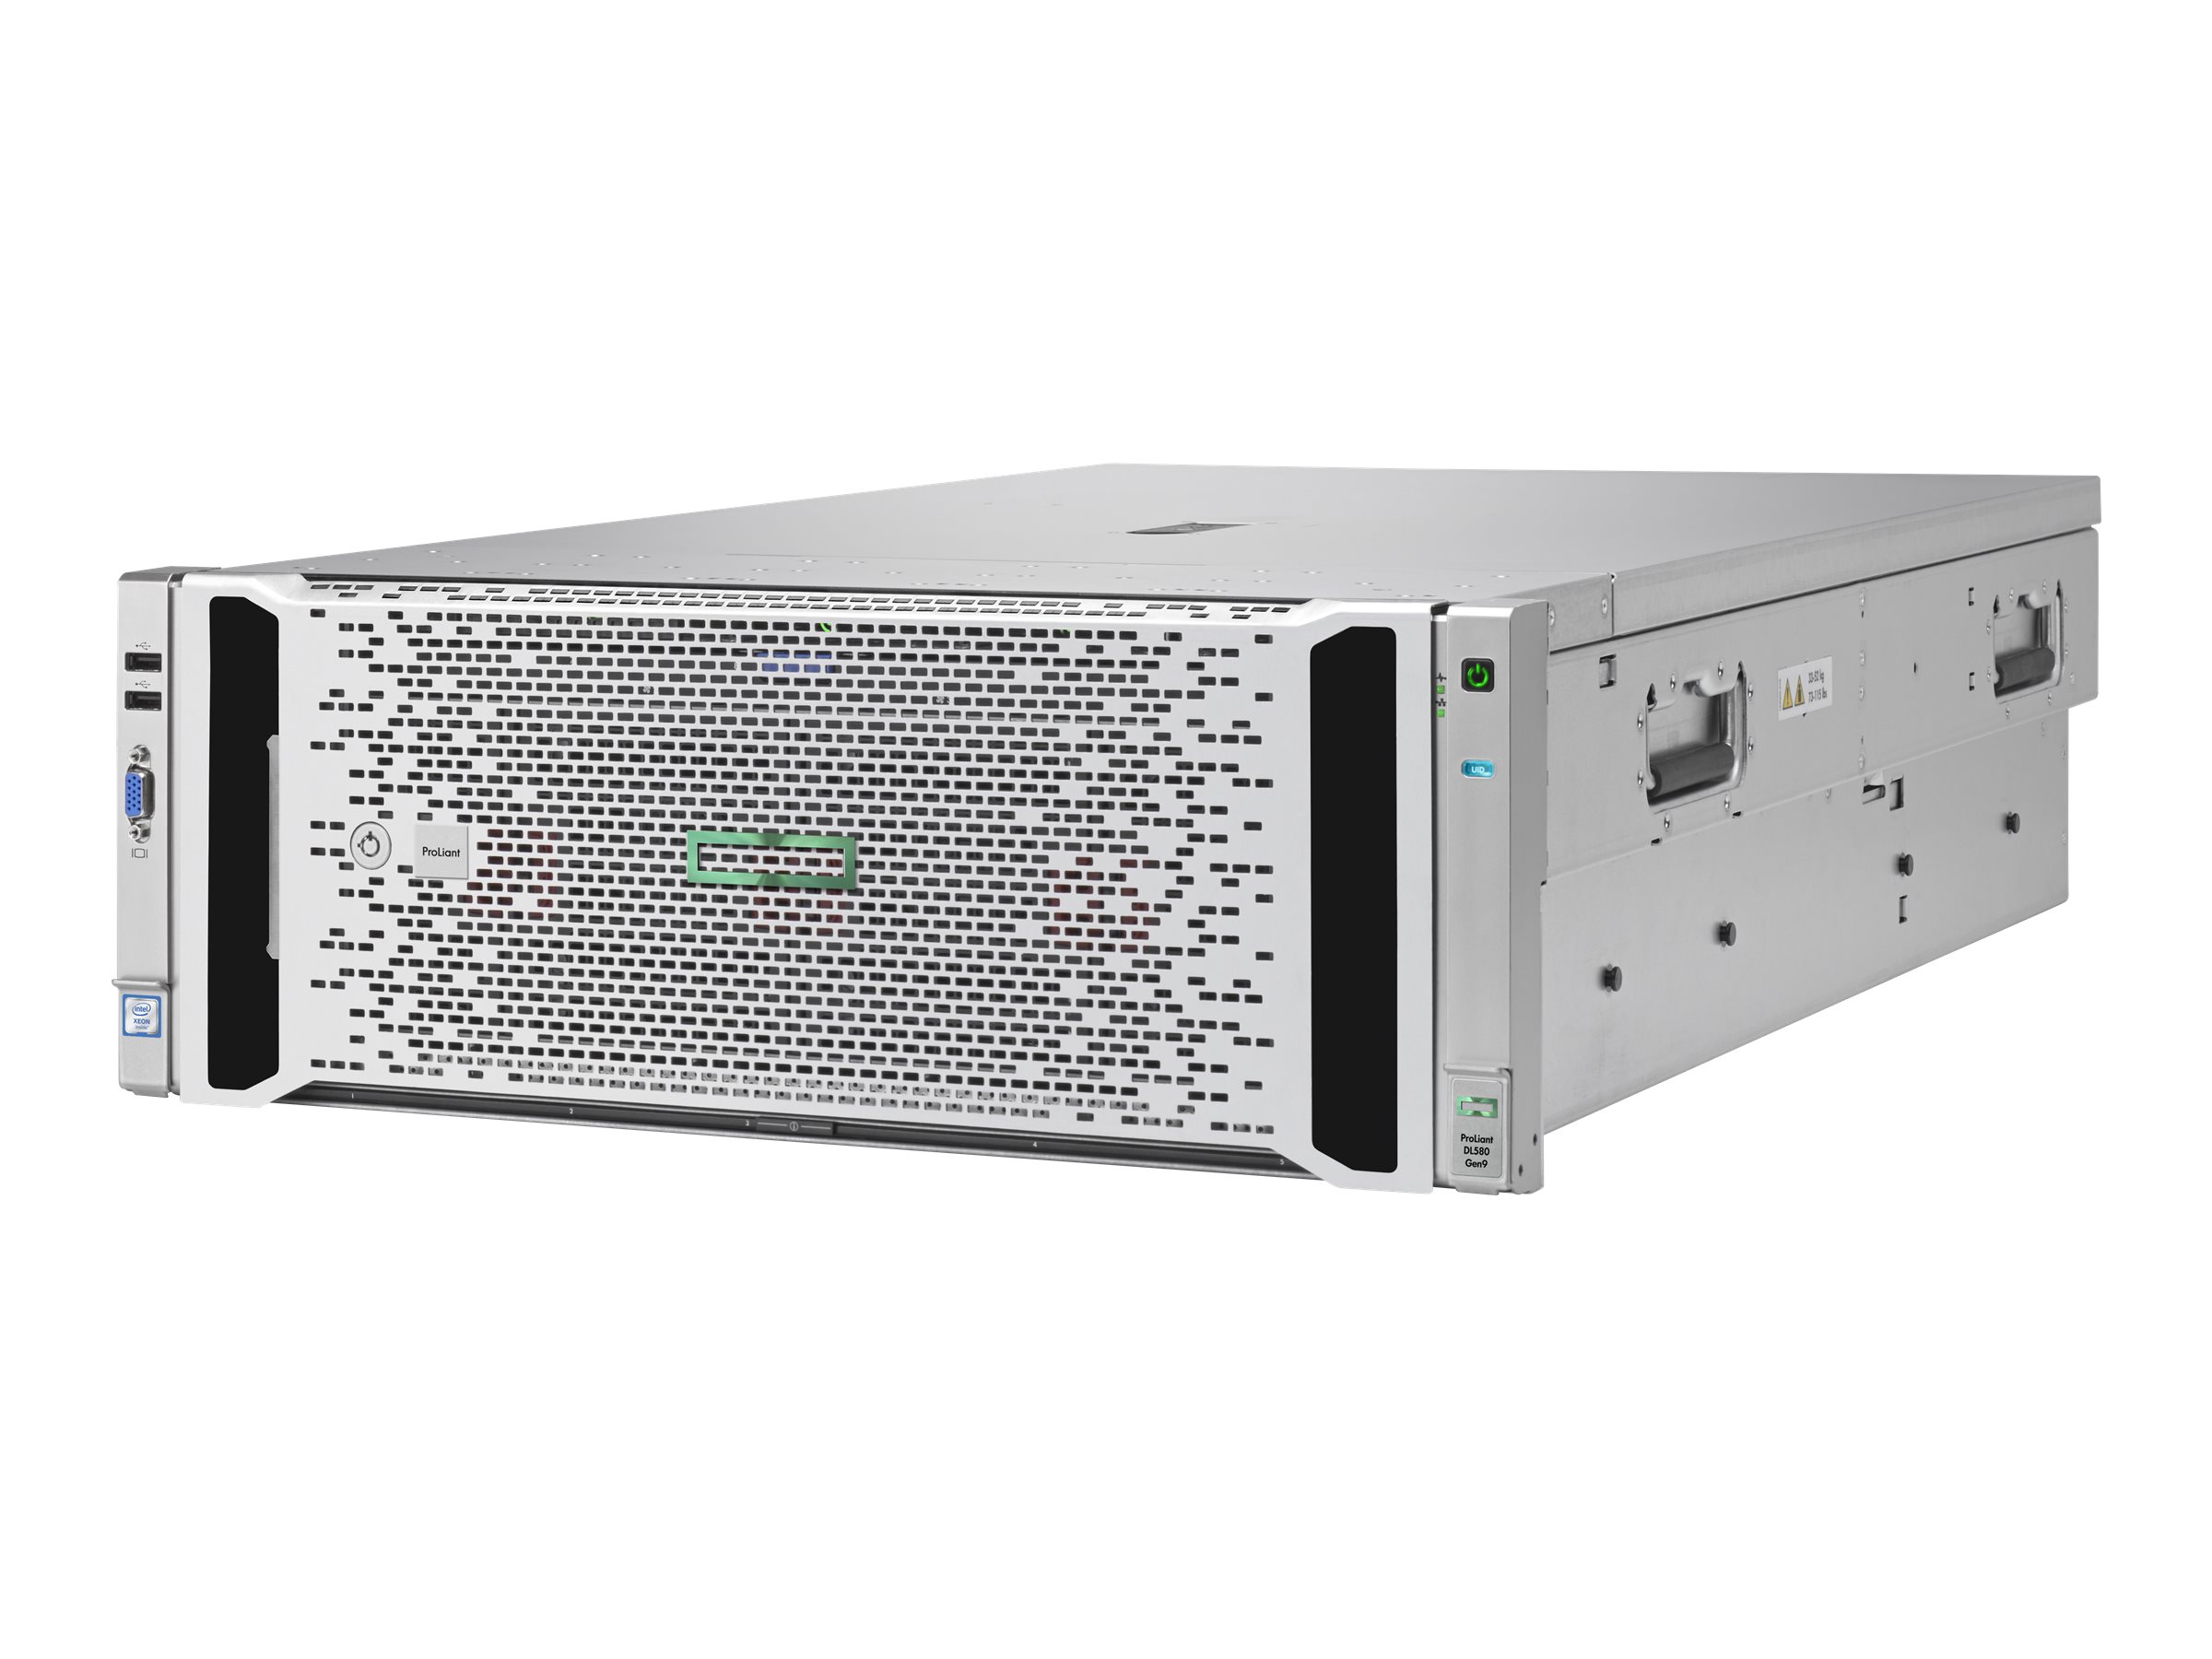 HPE ProLiant DL580 Gen9 Base - Serveur - Montable sur rack - 4U - à 4 voies - 2 x Xeon E7-4809v3 / 2 GHz - RAM 64 Go - SAS - hot-swap 2.5" baie(s) - aucun disque dur - Matrox G200 - Gigabit Ethernet - moniteur : aucun - 793308-B21 - Serveurs rack